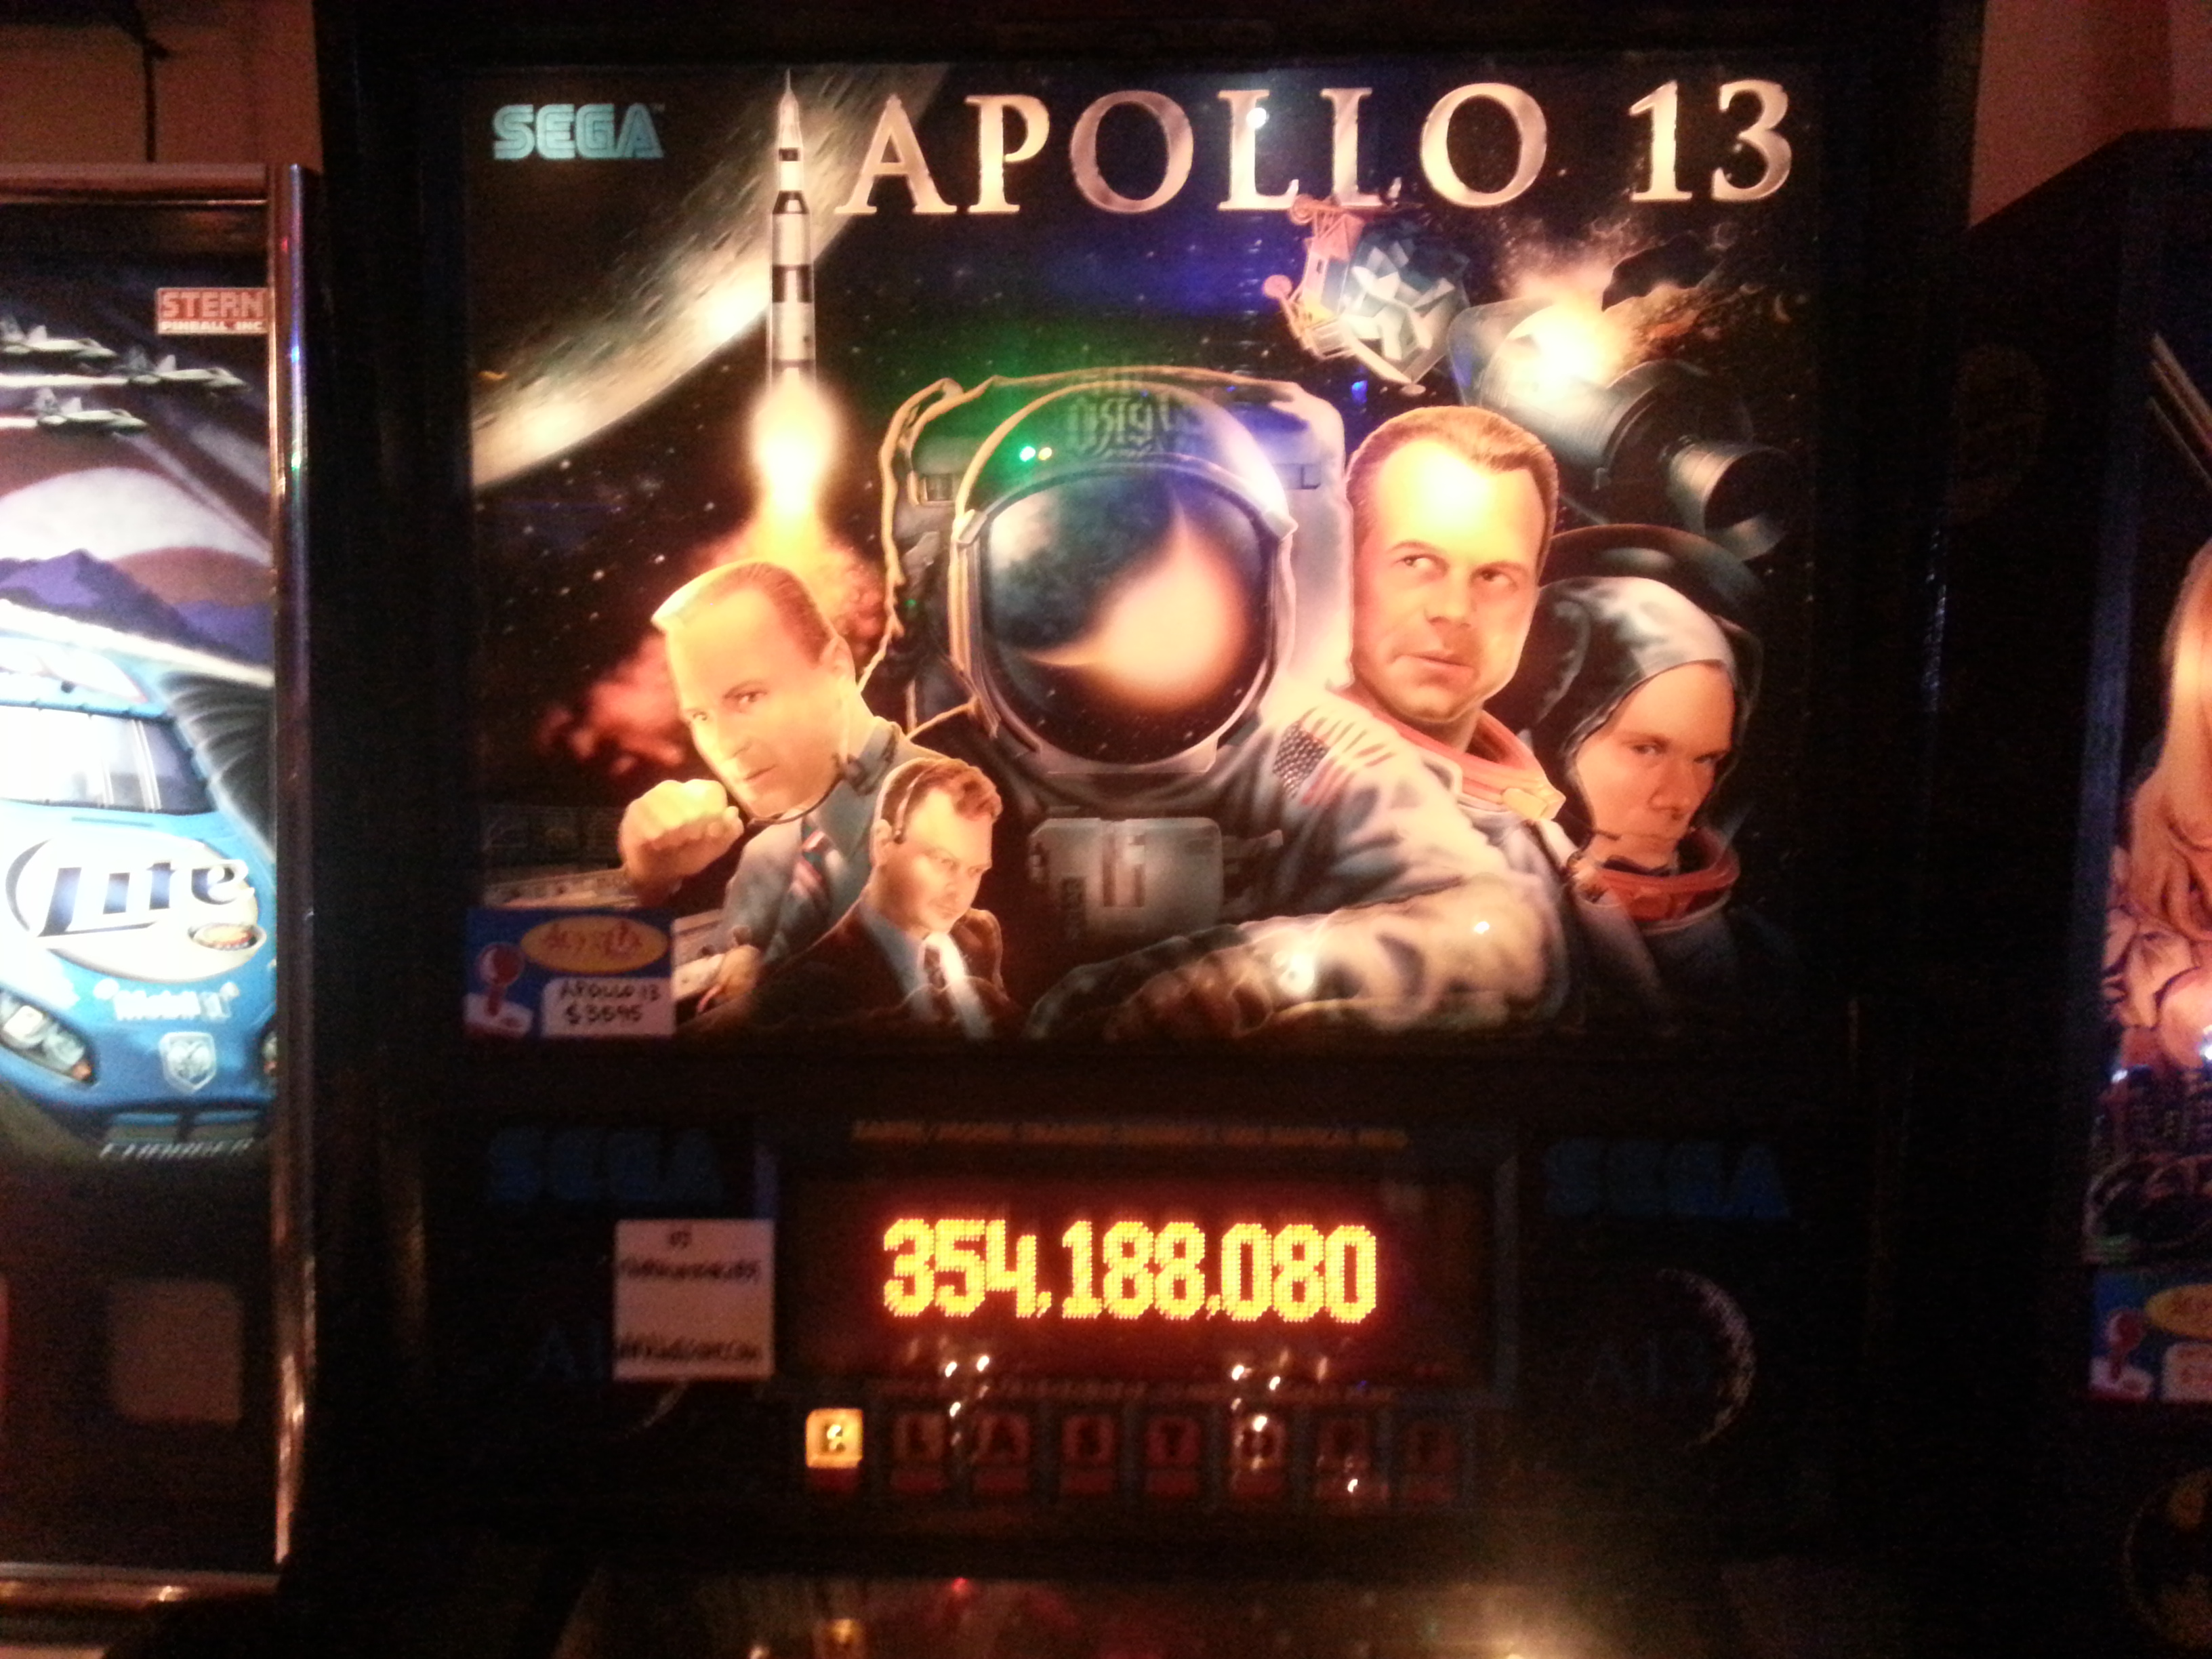 Apollo 13 354,188,080 points